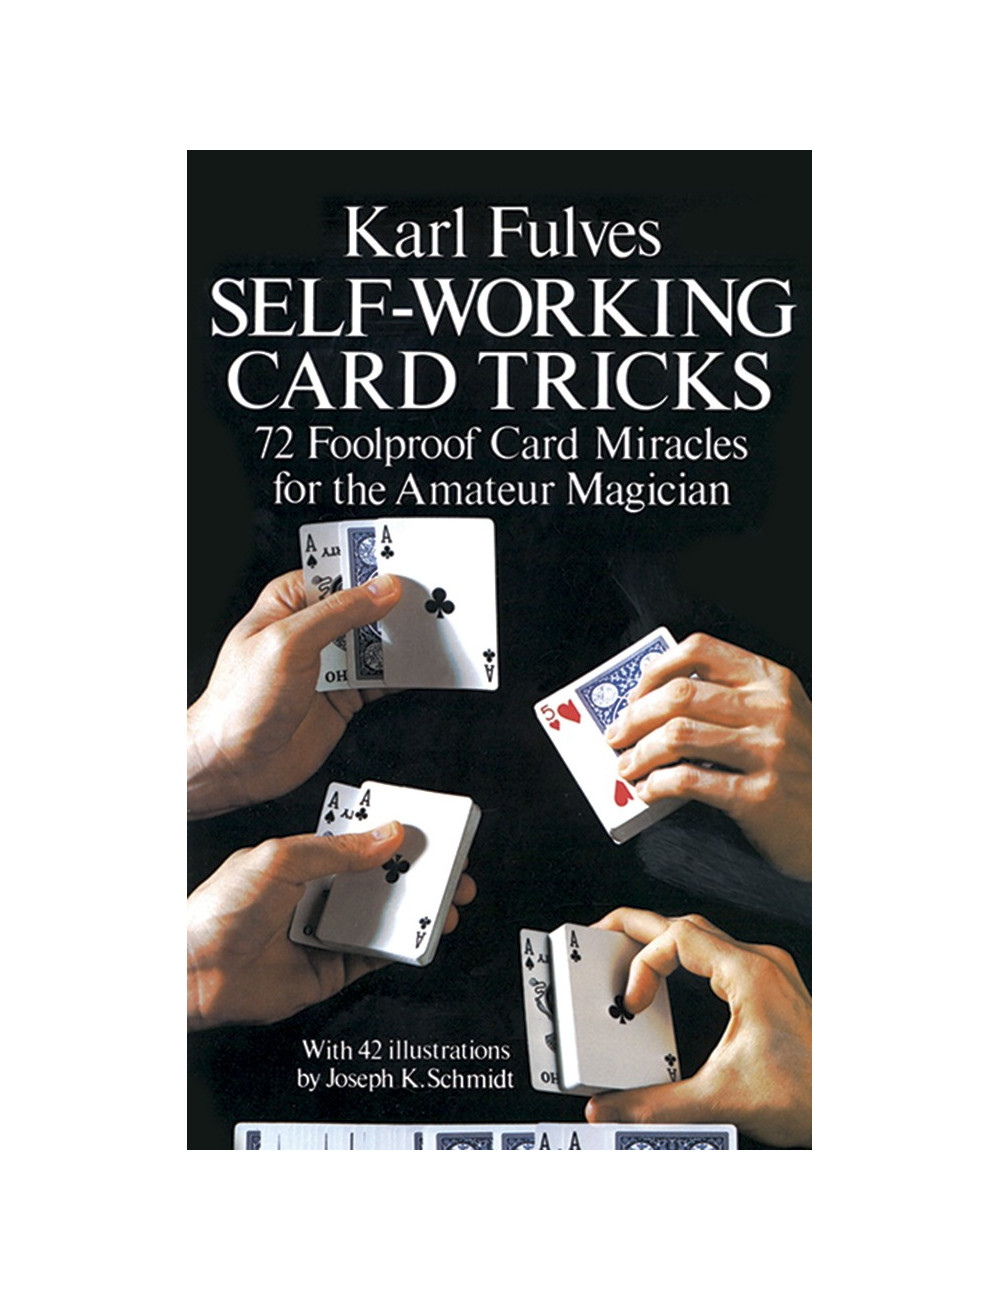 SELF-WORKING CARD TRICKS (Karl Fulves)